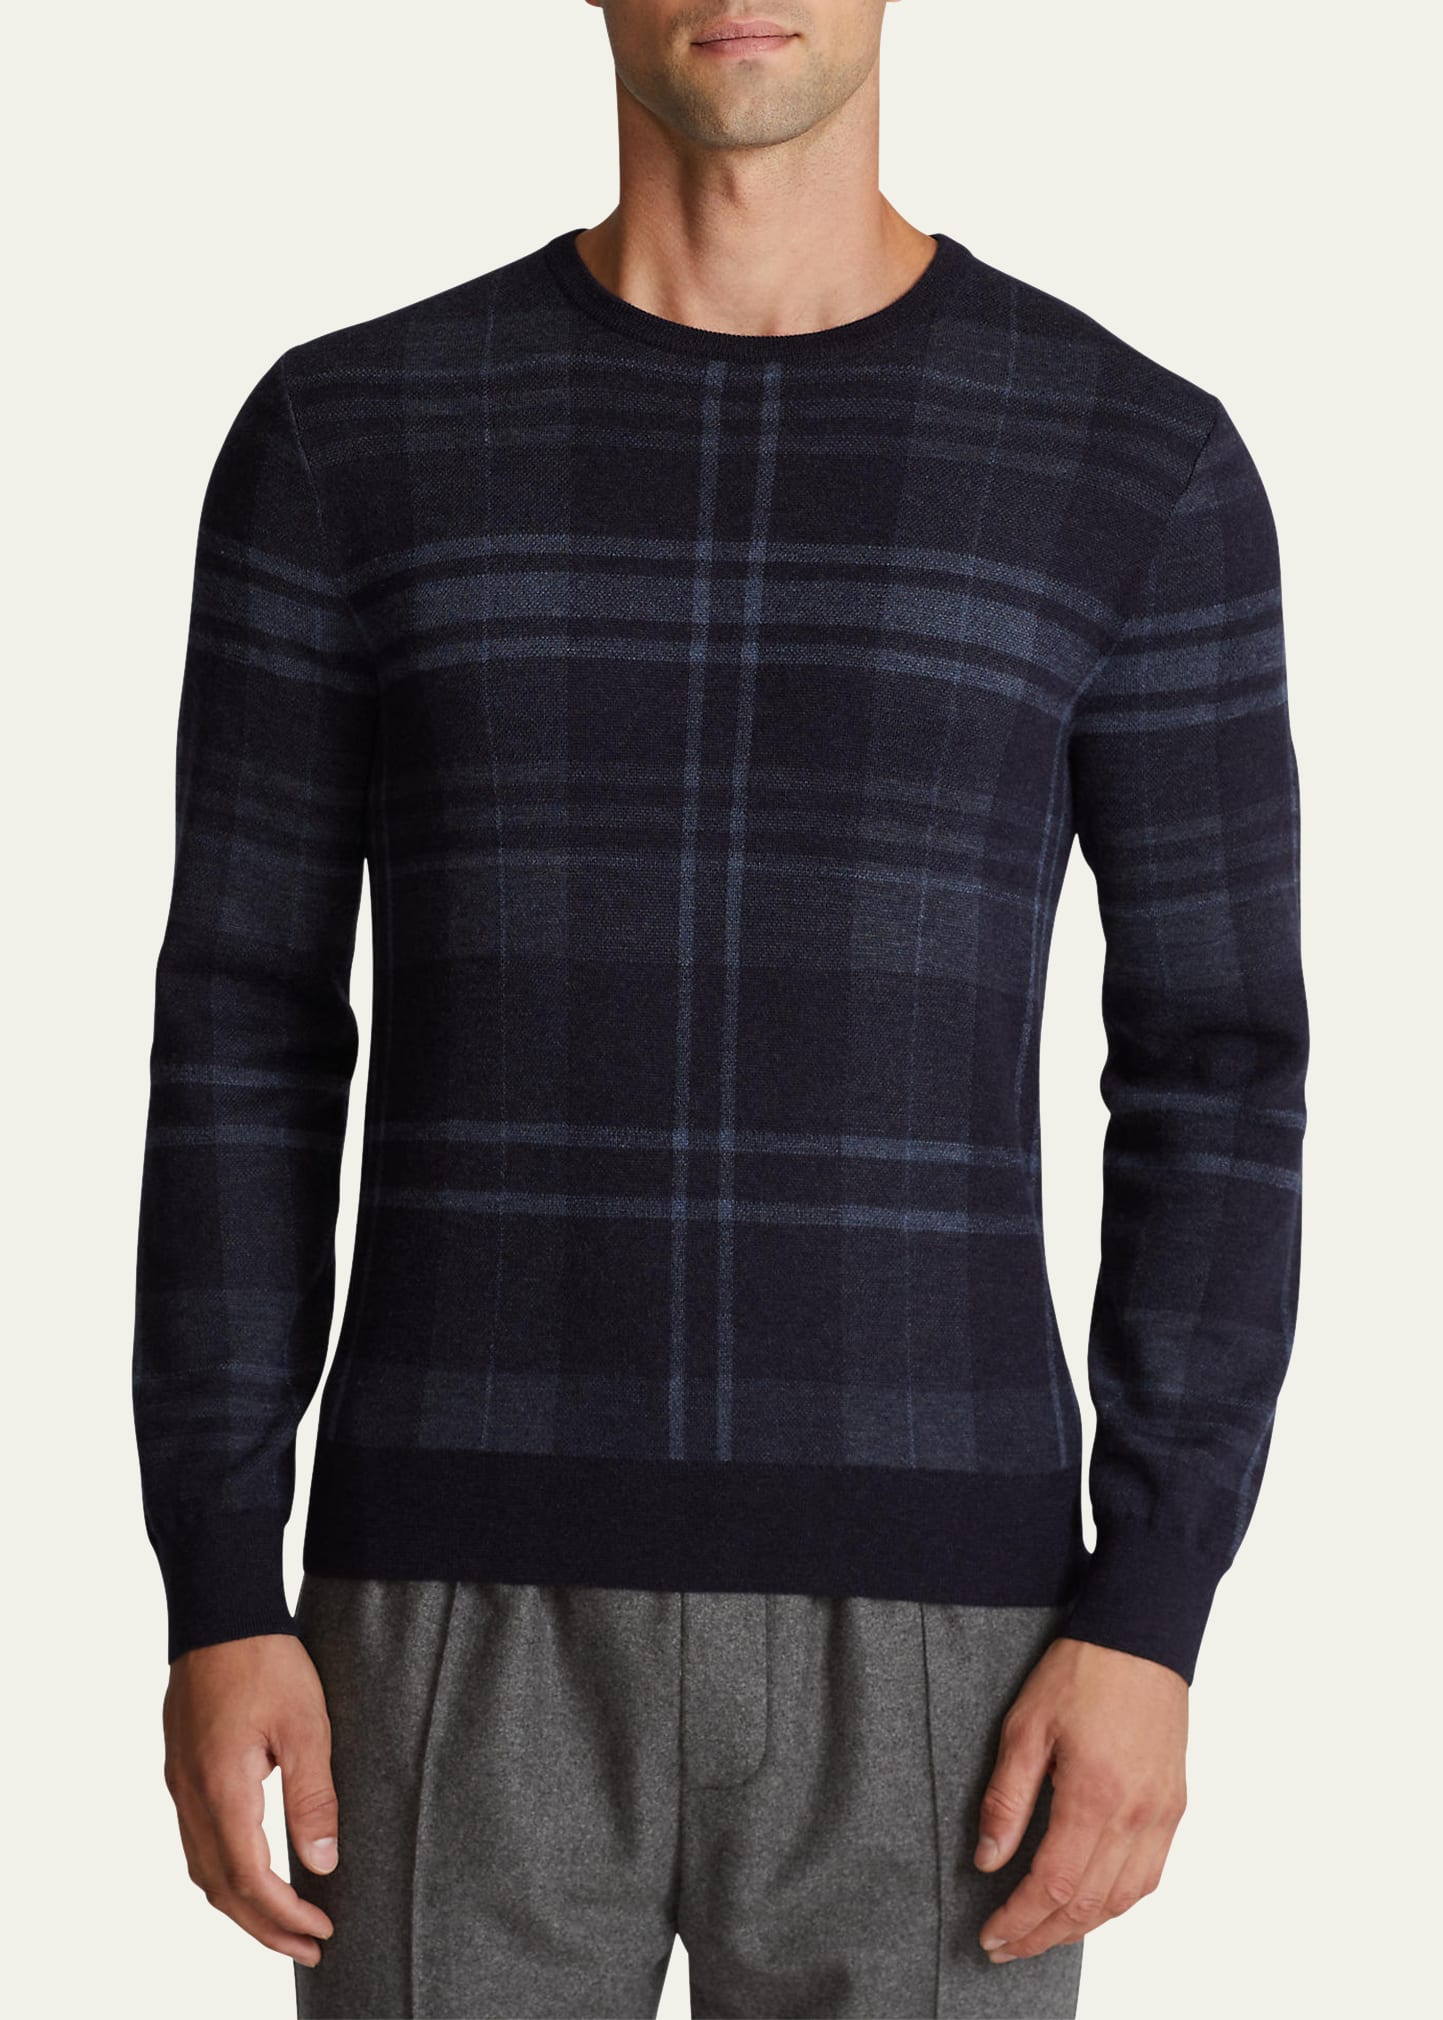 Men's Plaid Cashmere Sweater